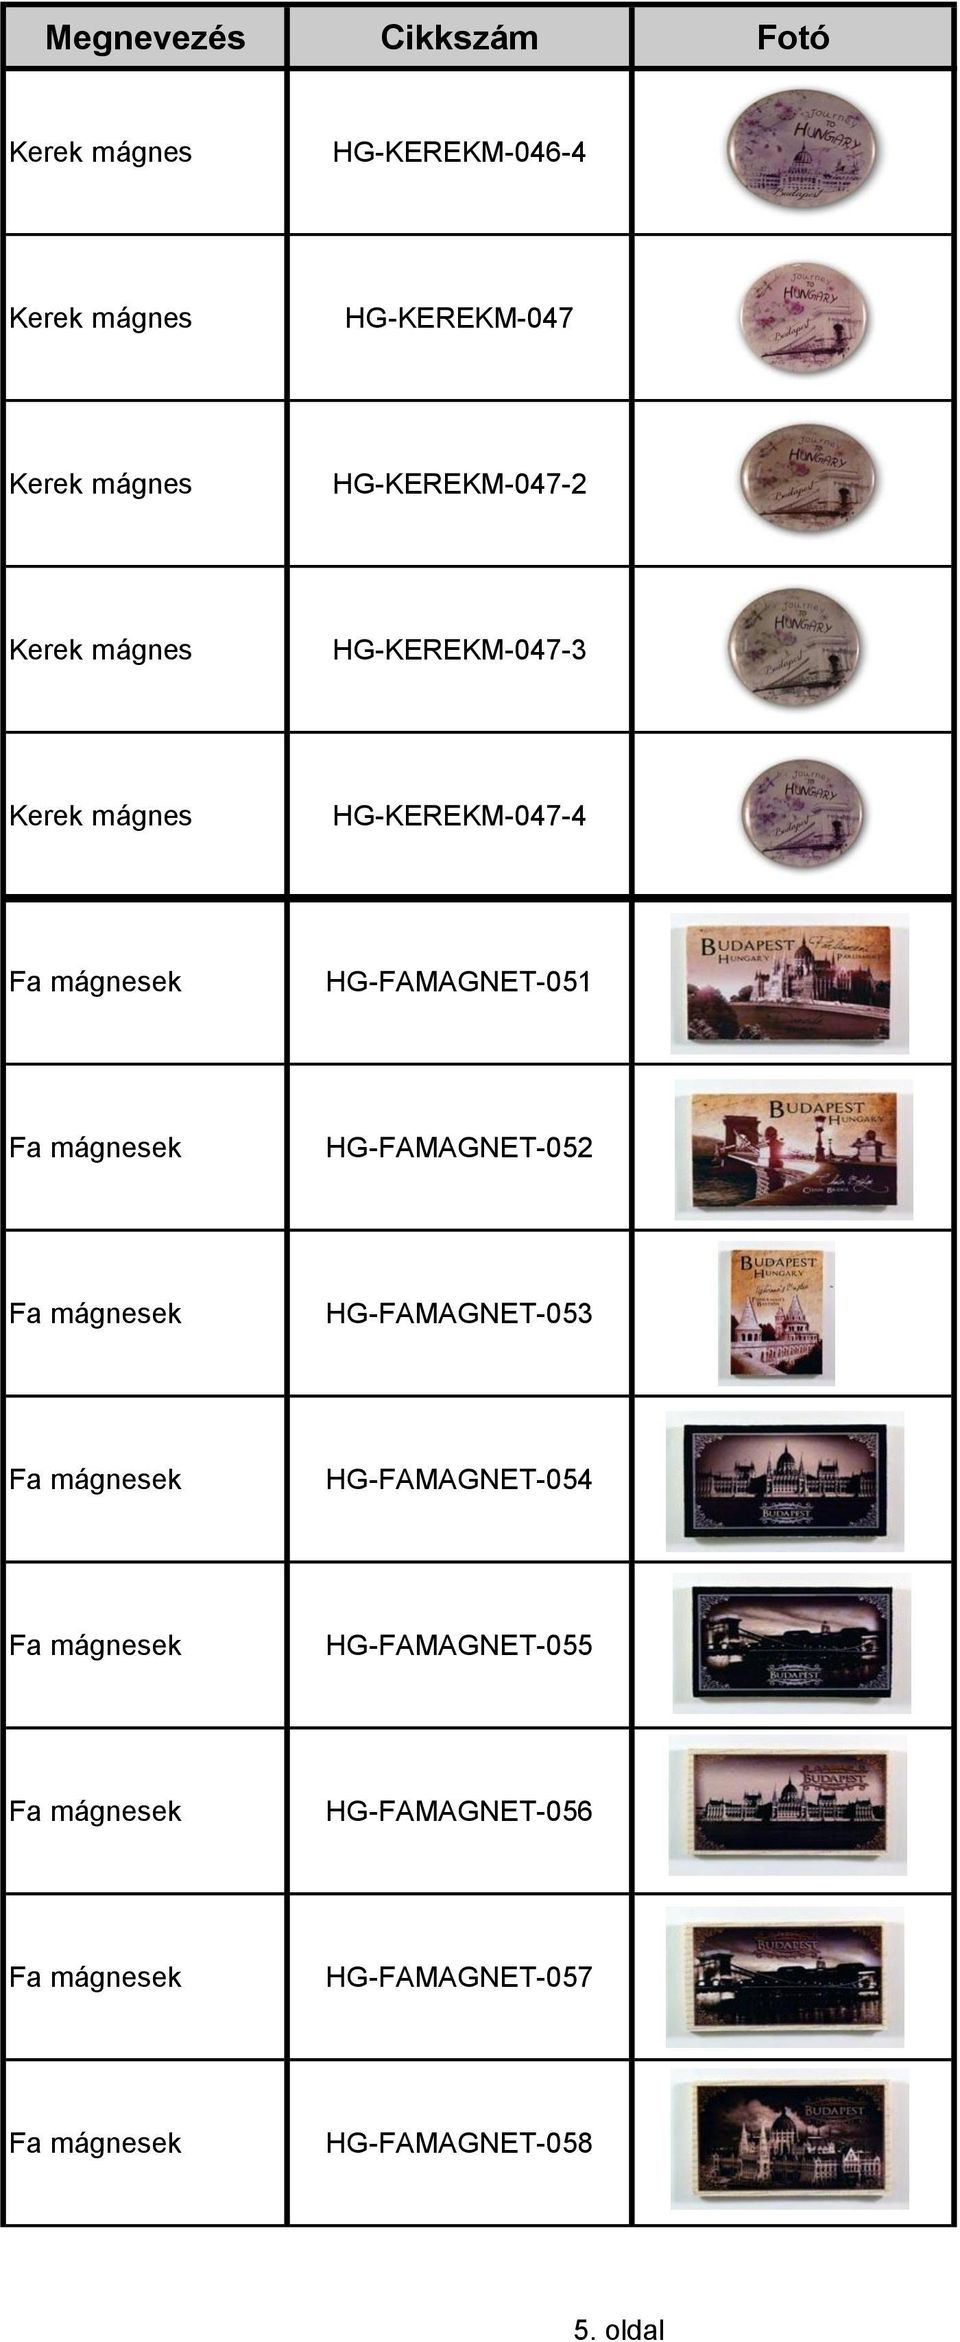 HG-FAMAGNET-052 Fa mágnesek HG-FAMAGNET-053 Fa mágnesek HG-FAMAGNET-054 Fa mágnesek